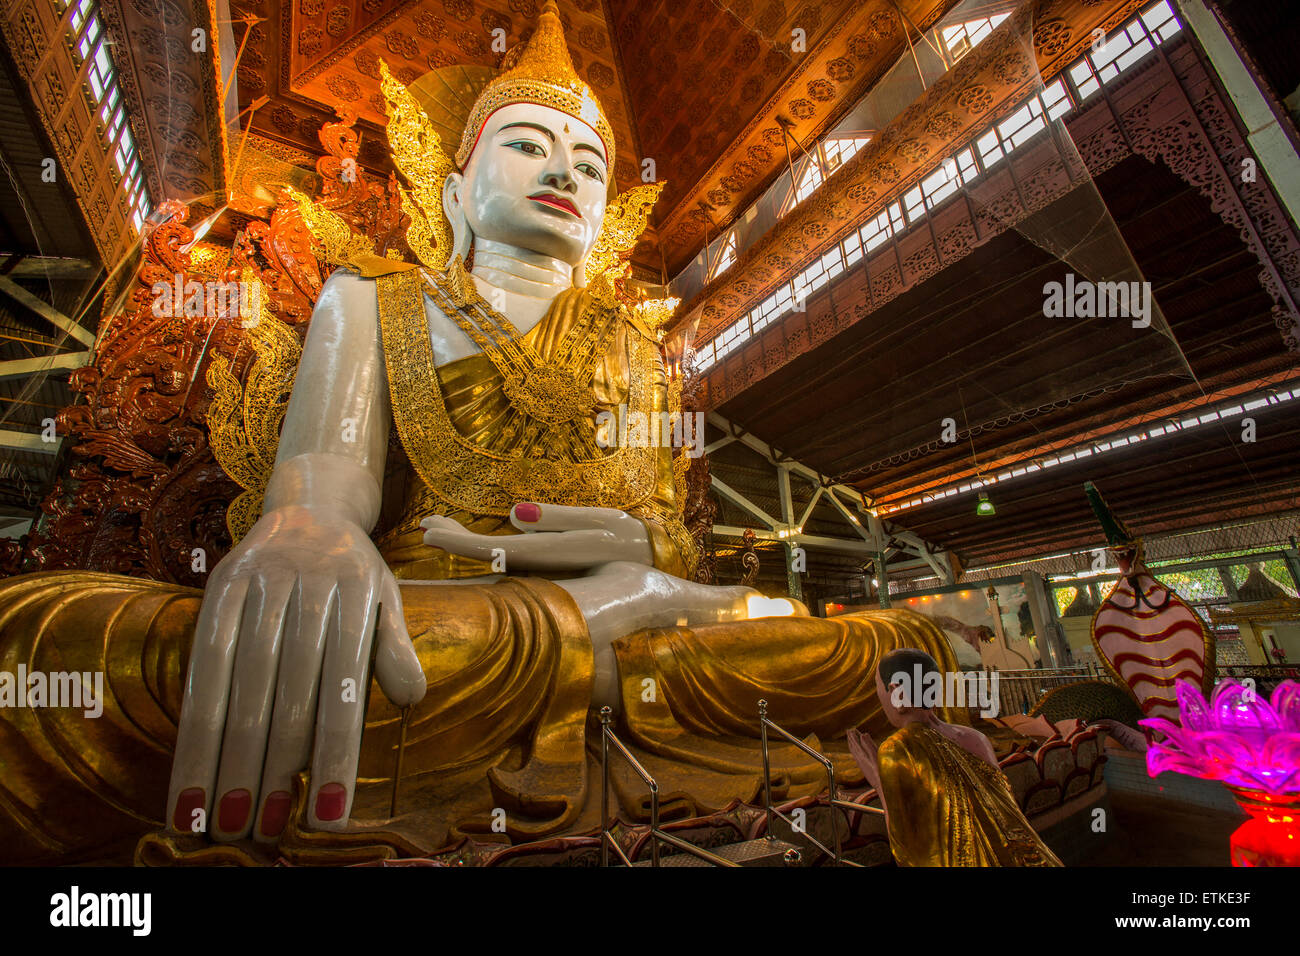 Nga Htat Gyi pagoda with giant seated Buddha in Yangon Myanmar Stock Photo